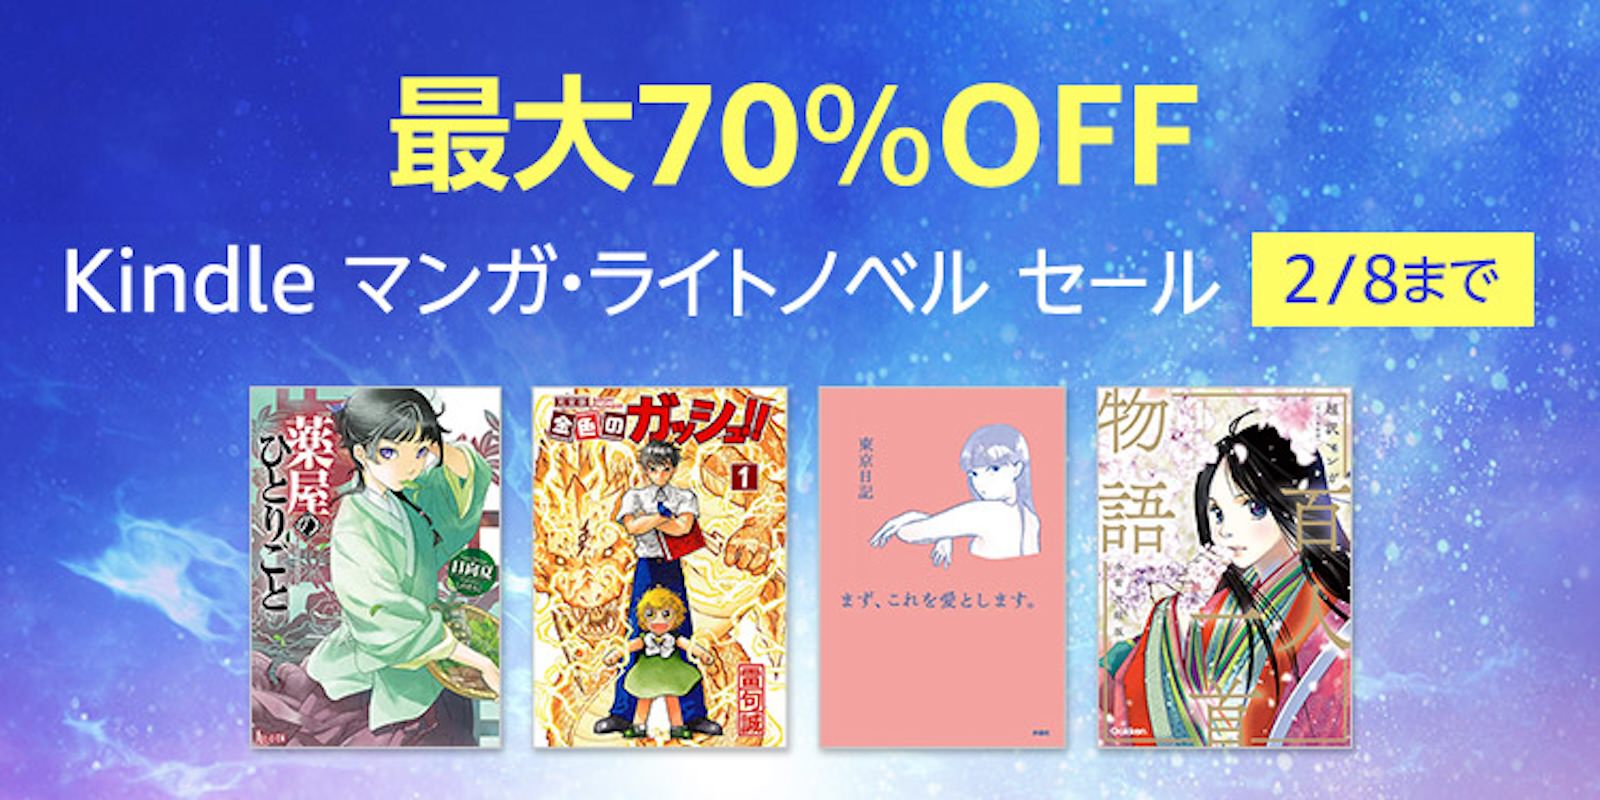 Kindle Manga Light Novel Sale